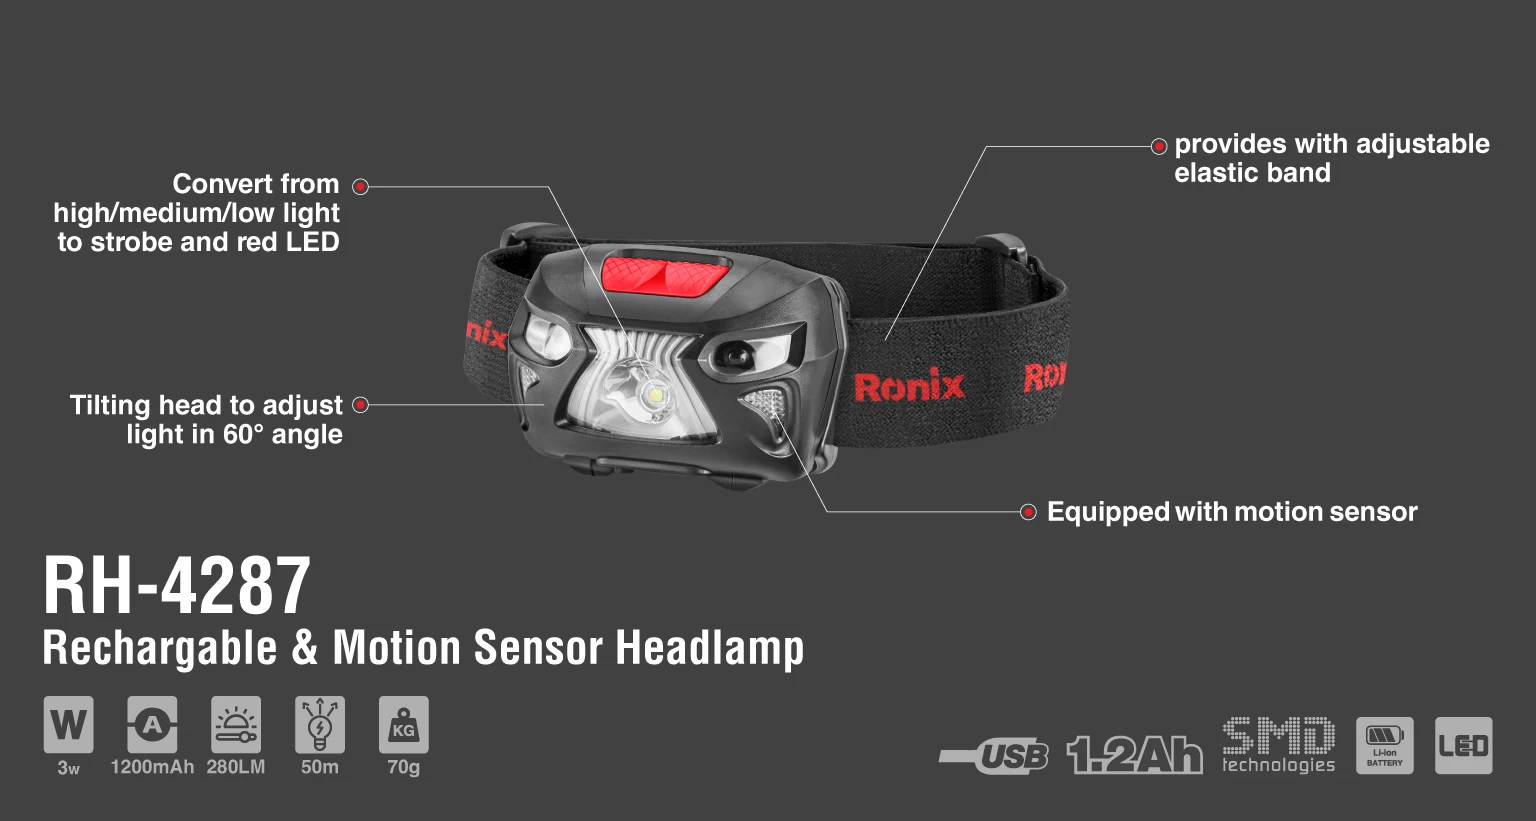 5w Rechargable & Motion sensor headlamp-280lm_details